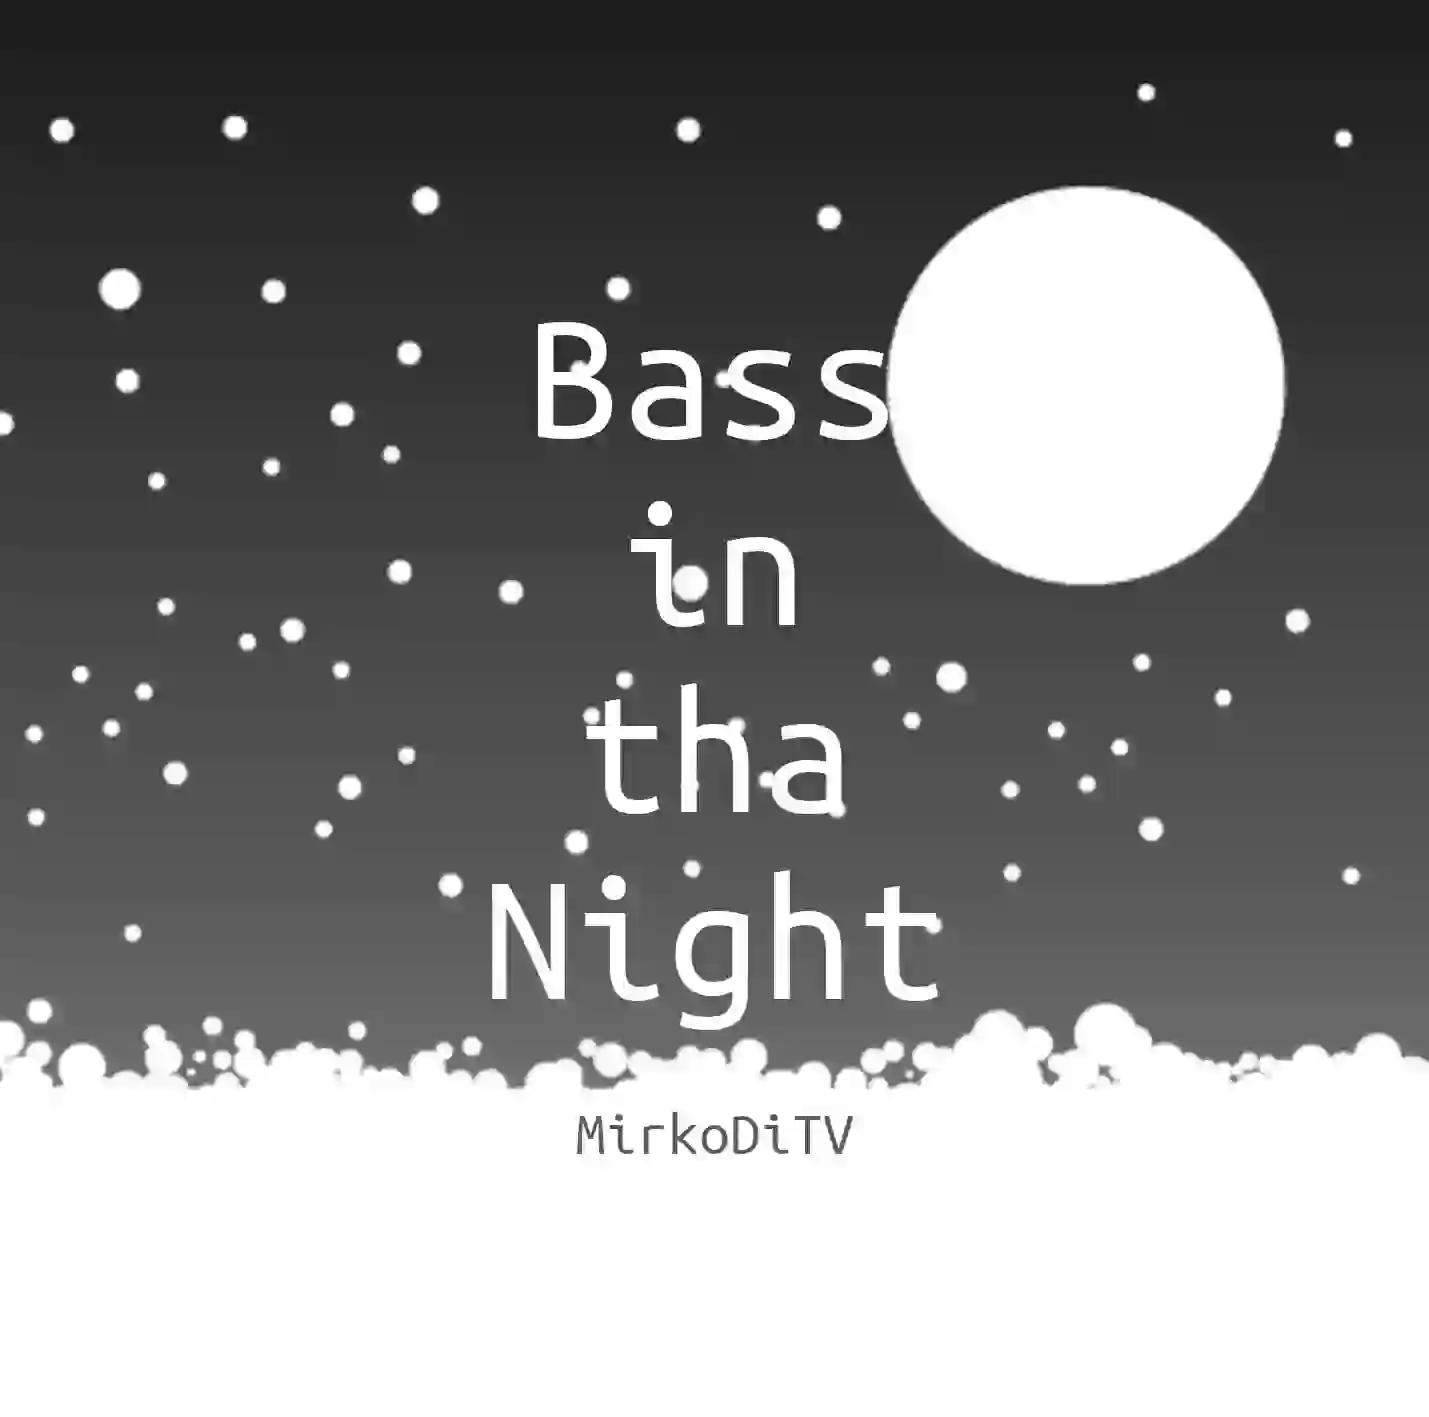 Scritta 'Bass in tha Night - MirkoDiTV' molto grande,
                             un'immagine di un cielo notturno come sfondo